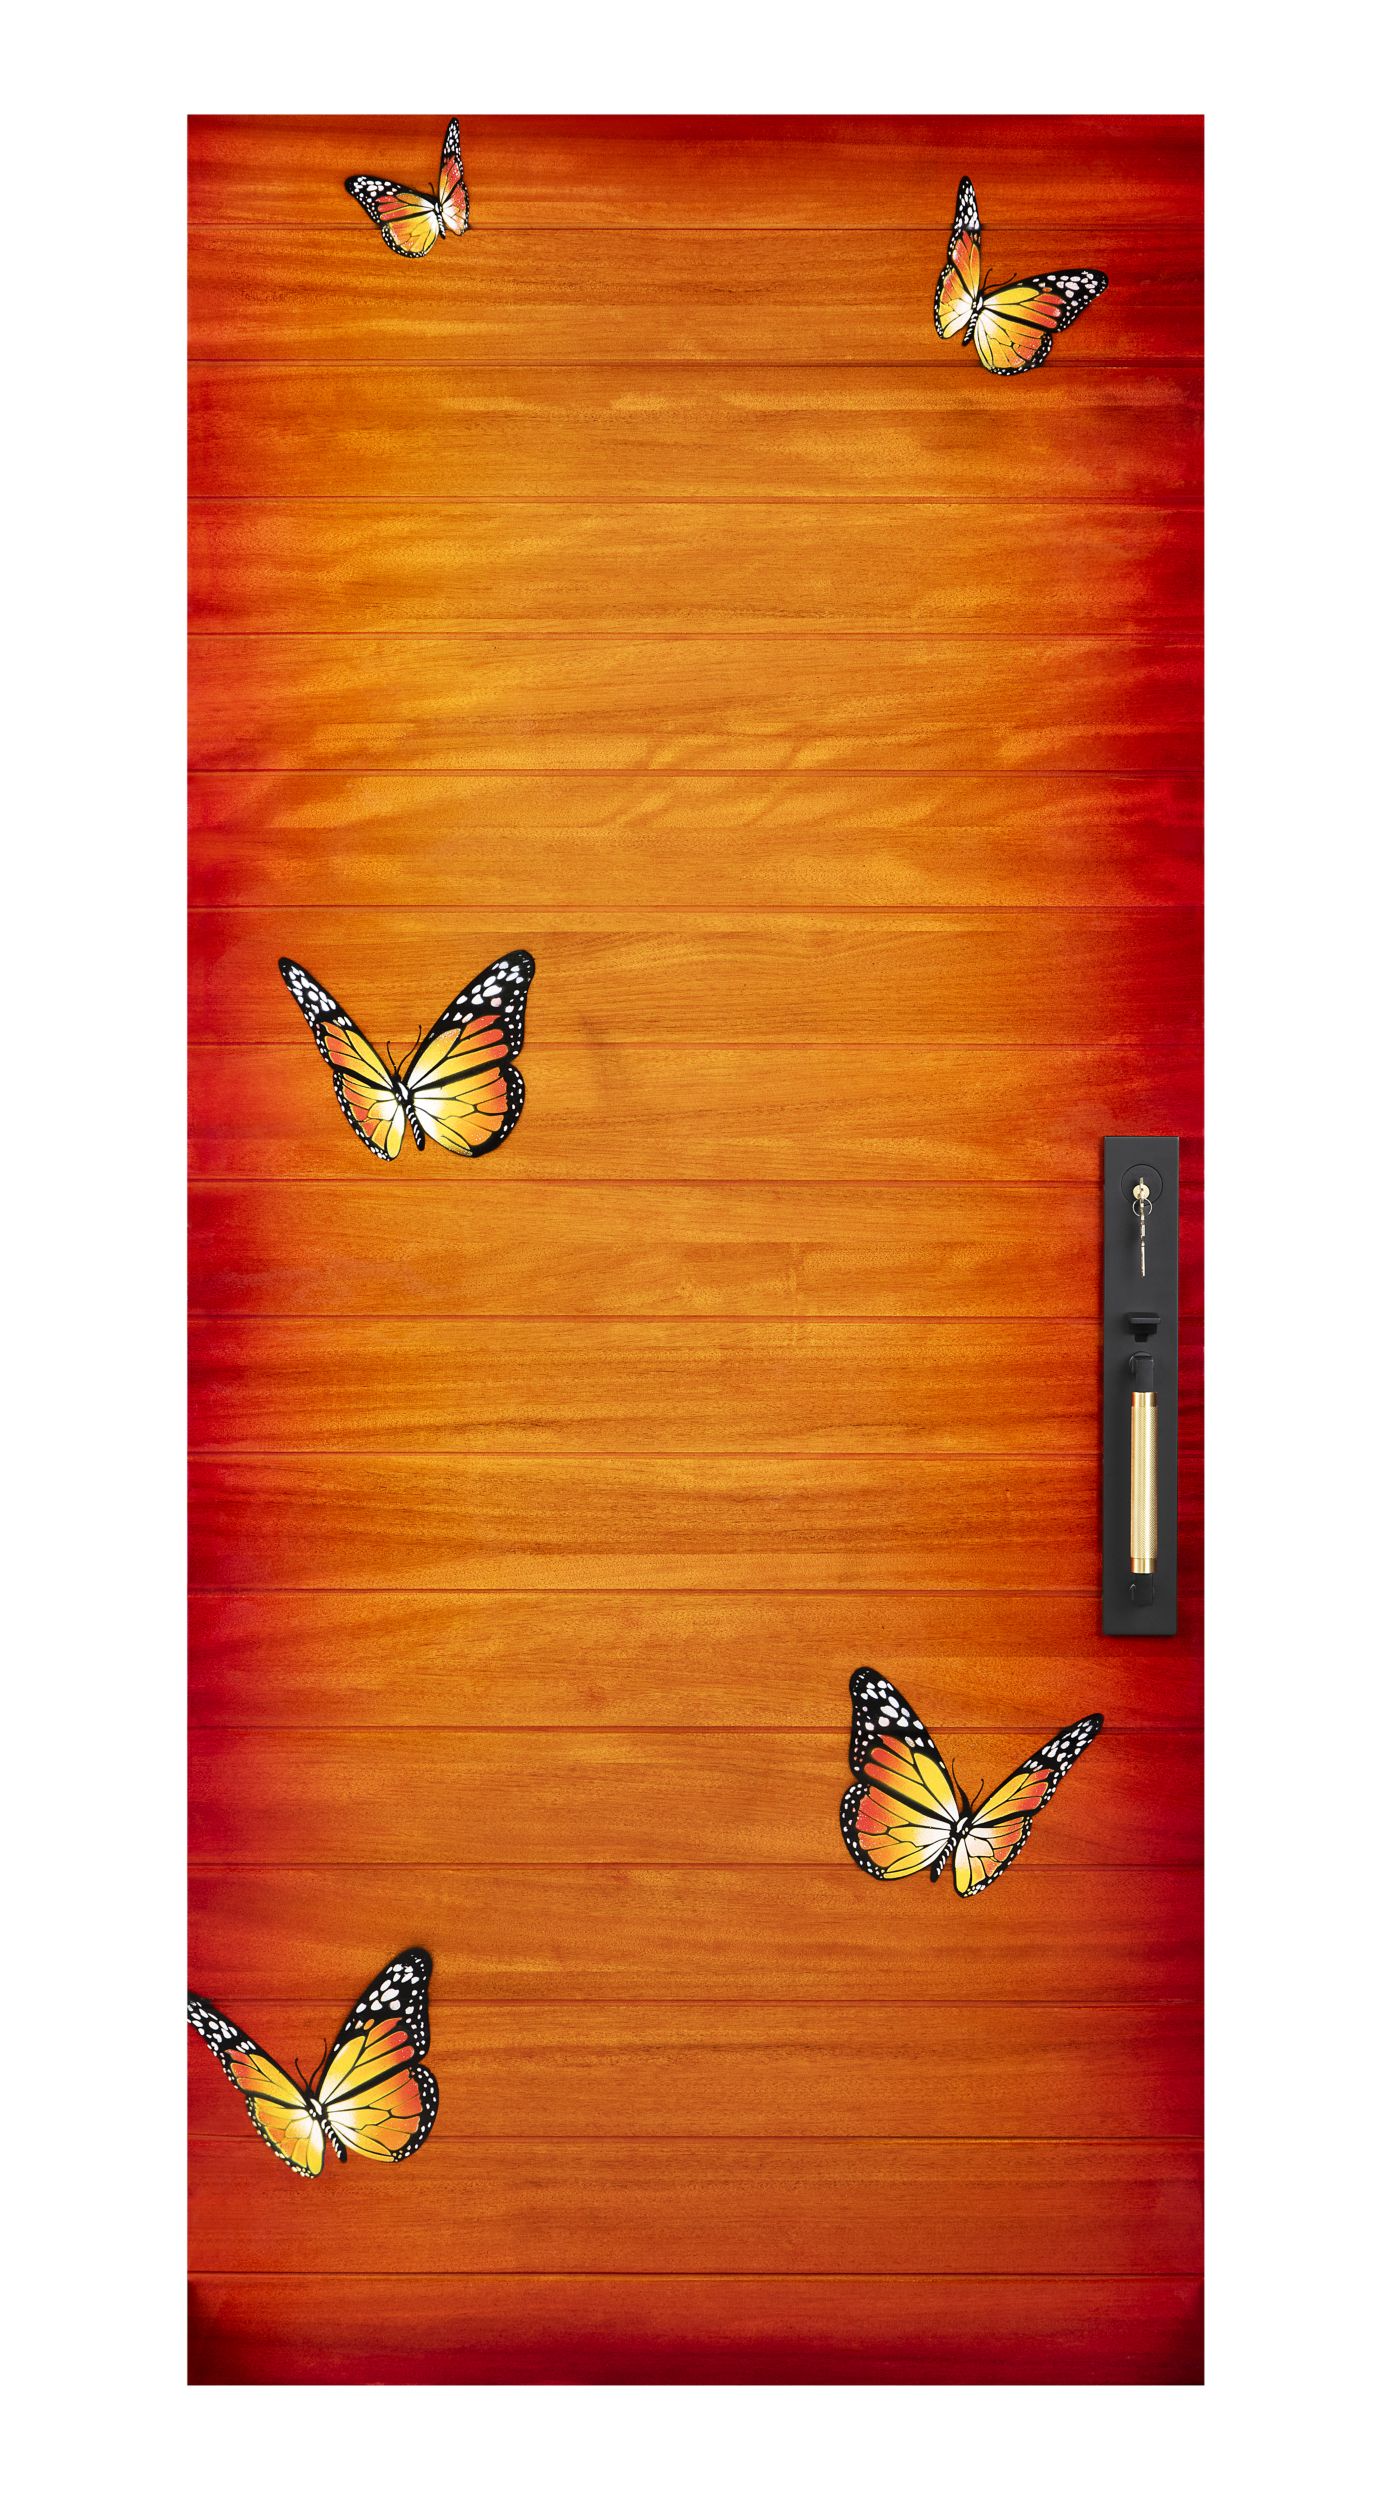 Monarch Door